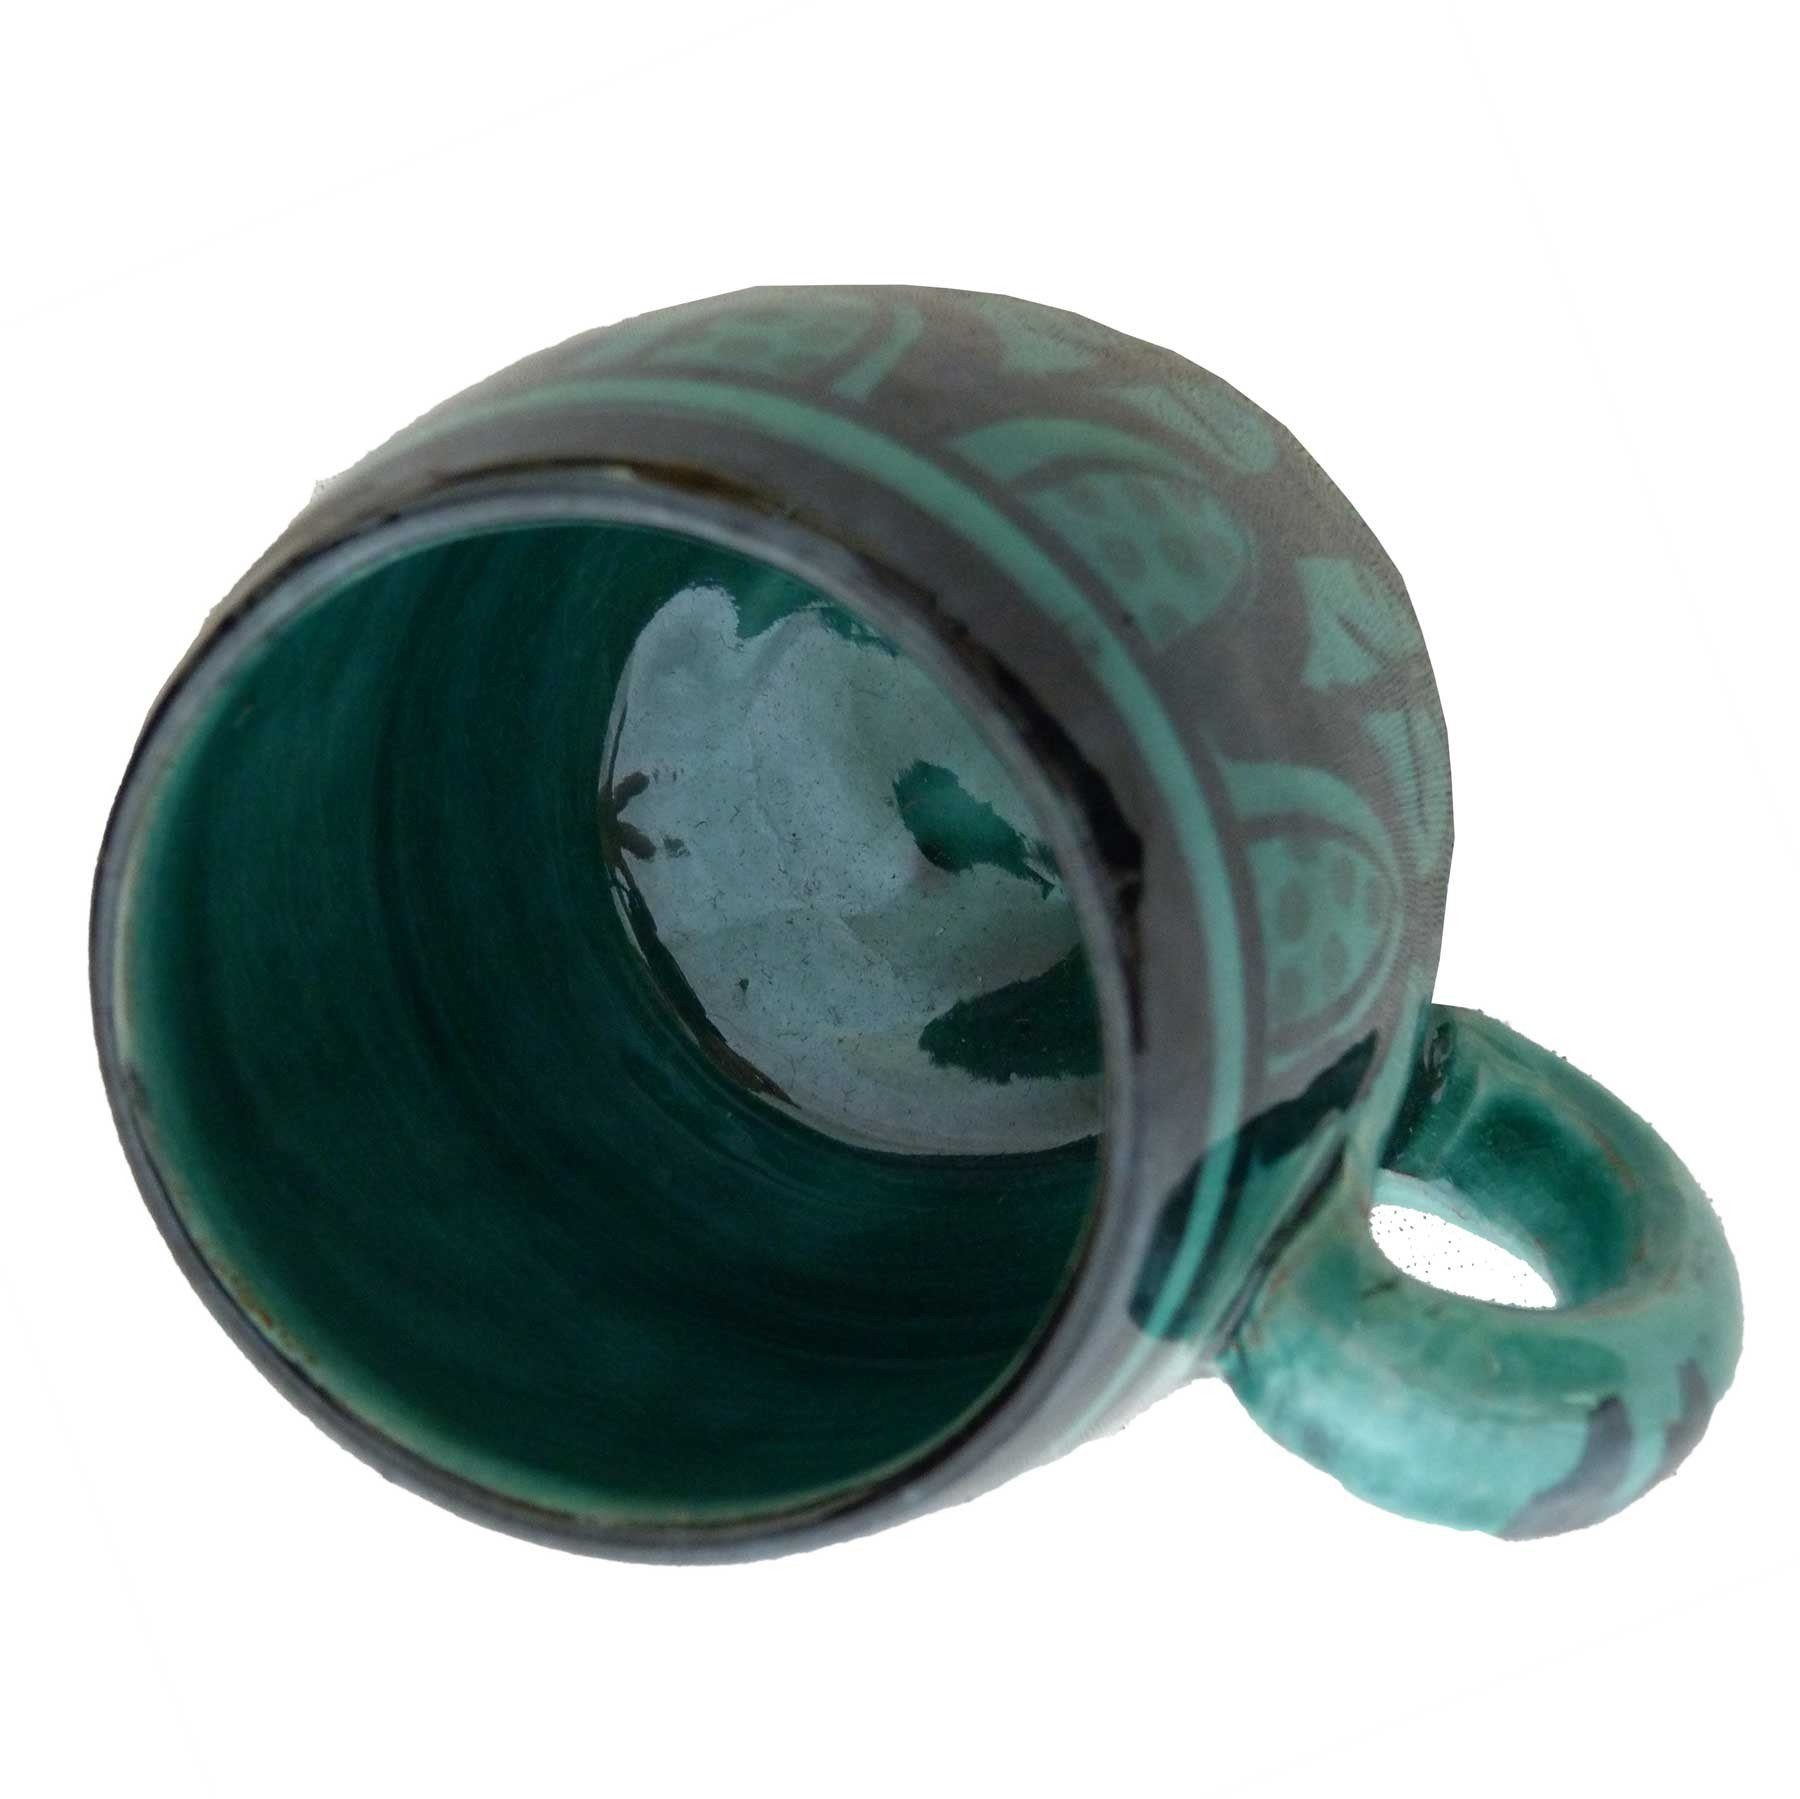 Tasse Tasse handbemalt, marokkanische Klein Keramik SIMANDRA Keramik Grün Bemalung